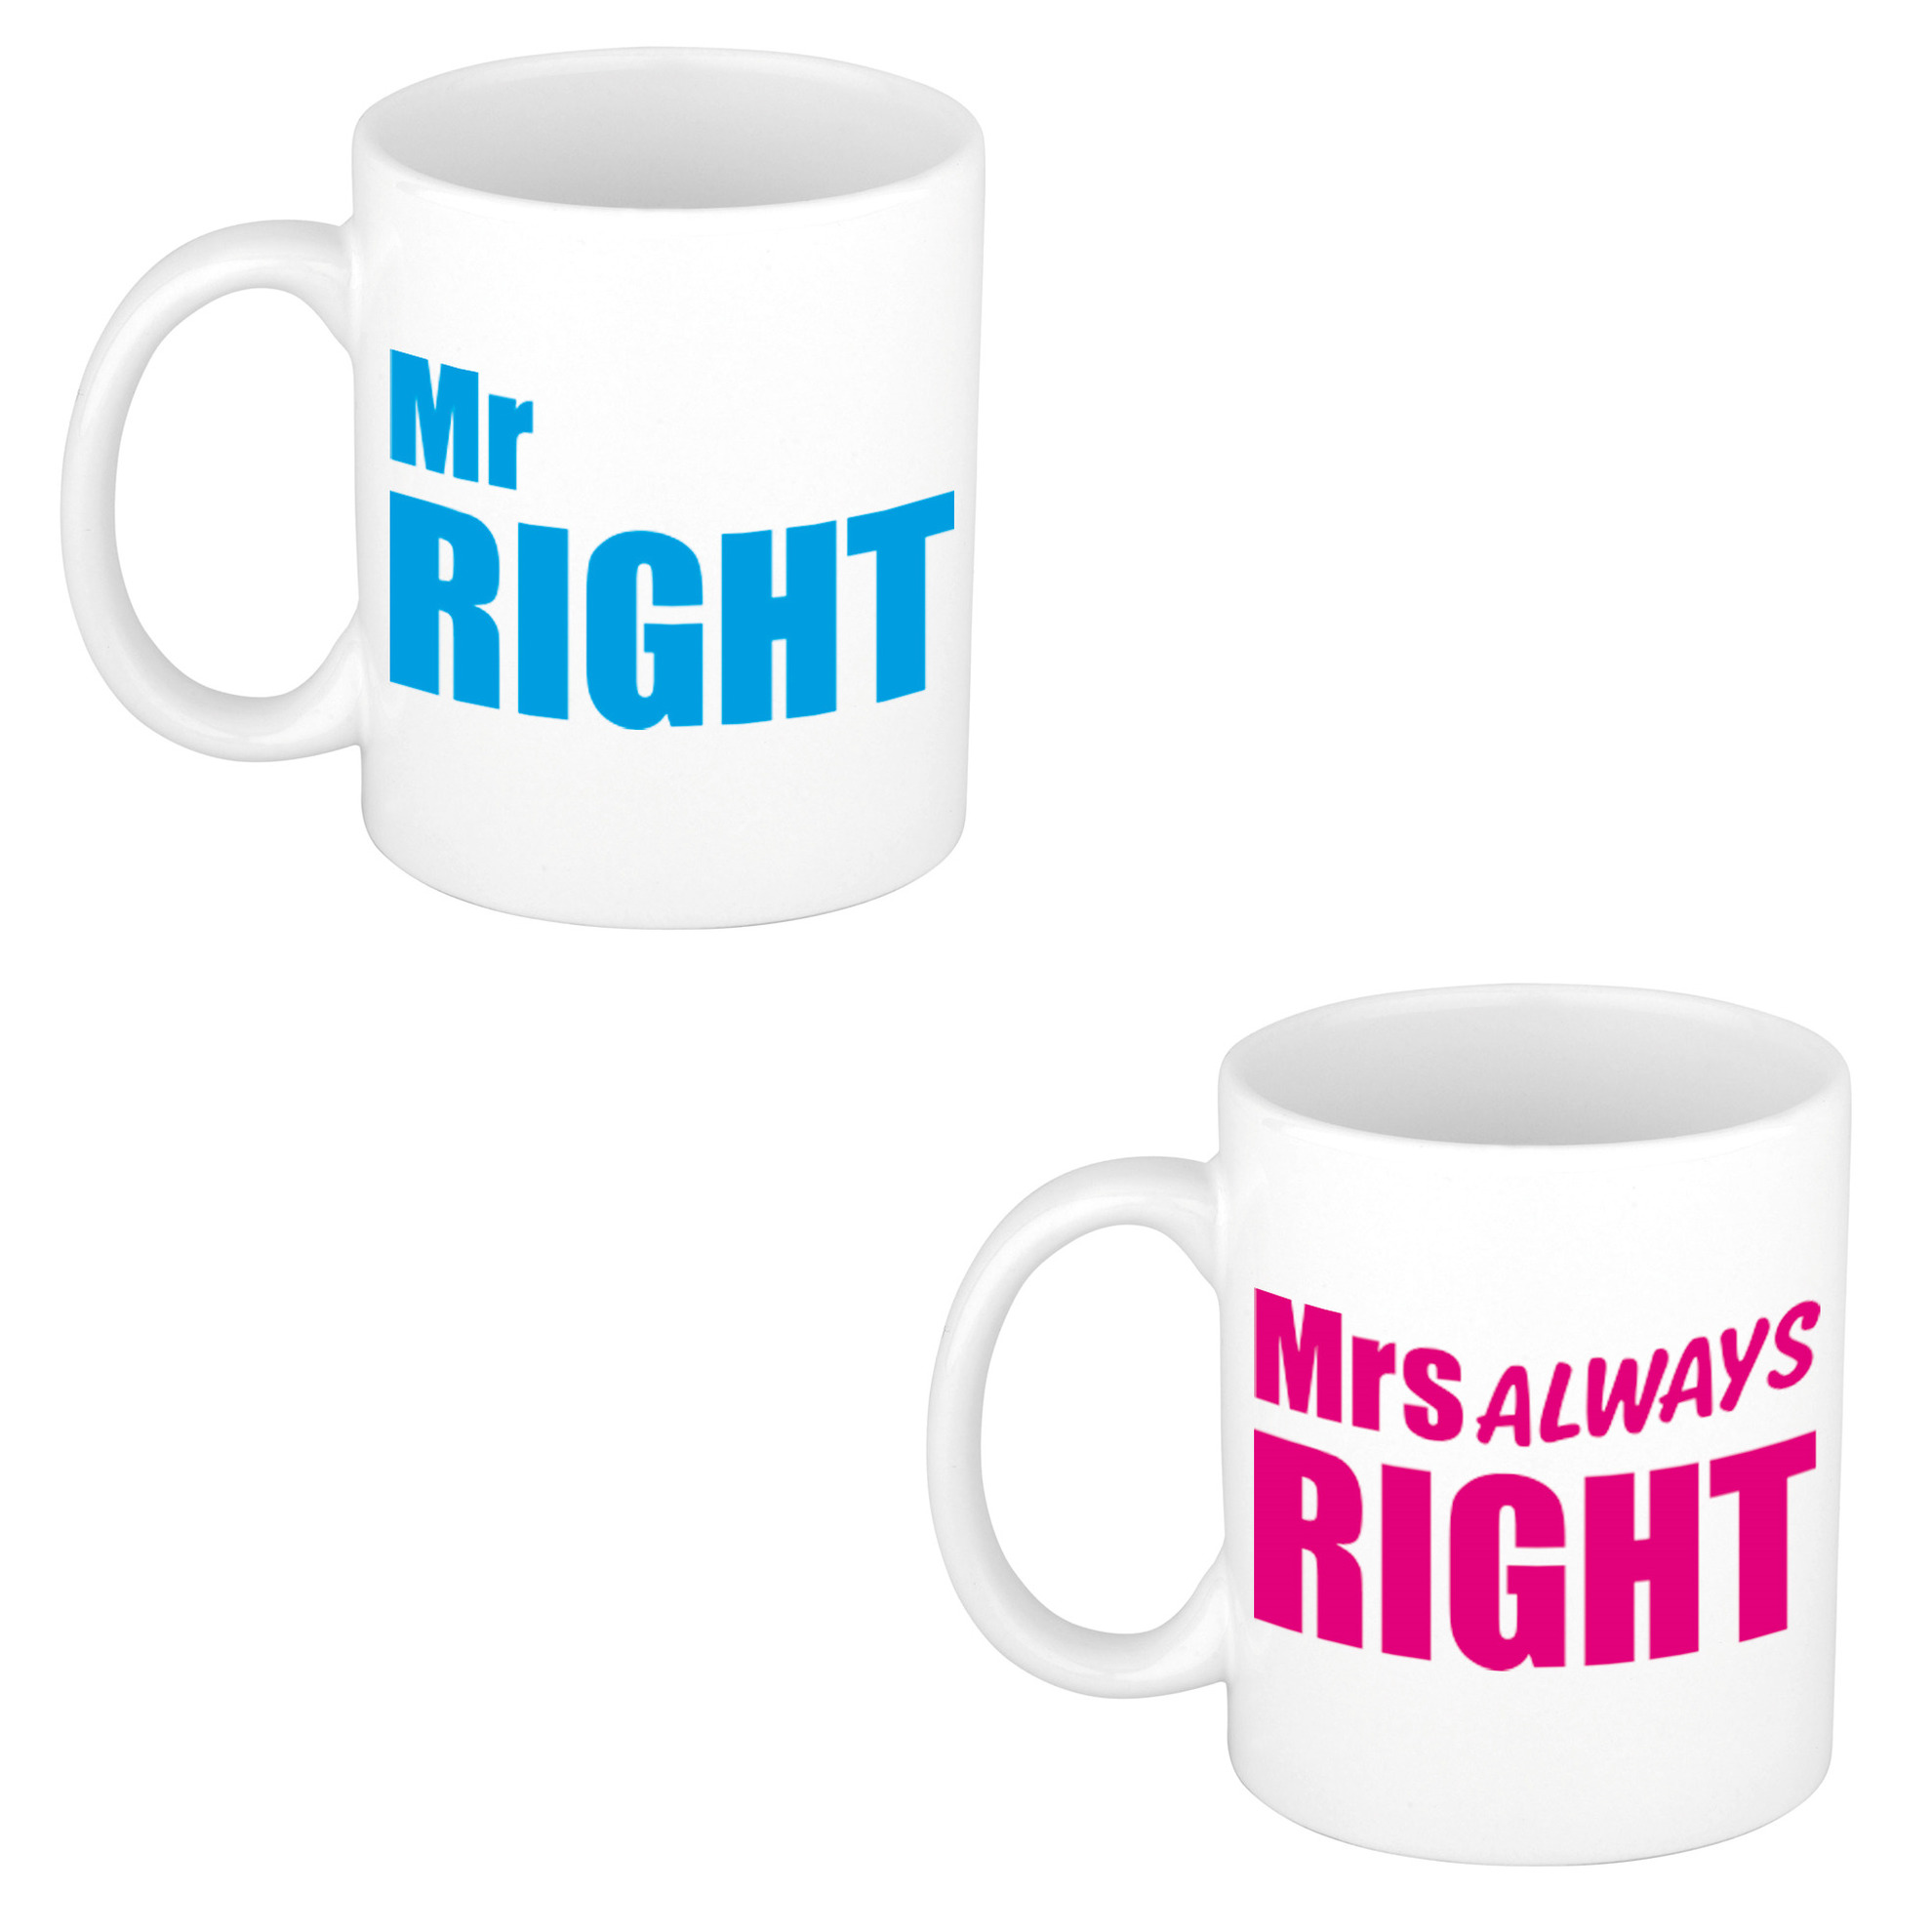 Mr right en mrs always right cadeau mok - beker wit met blauwe en roze letters 300 ml